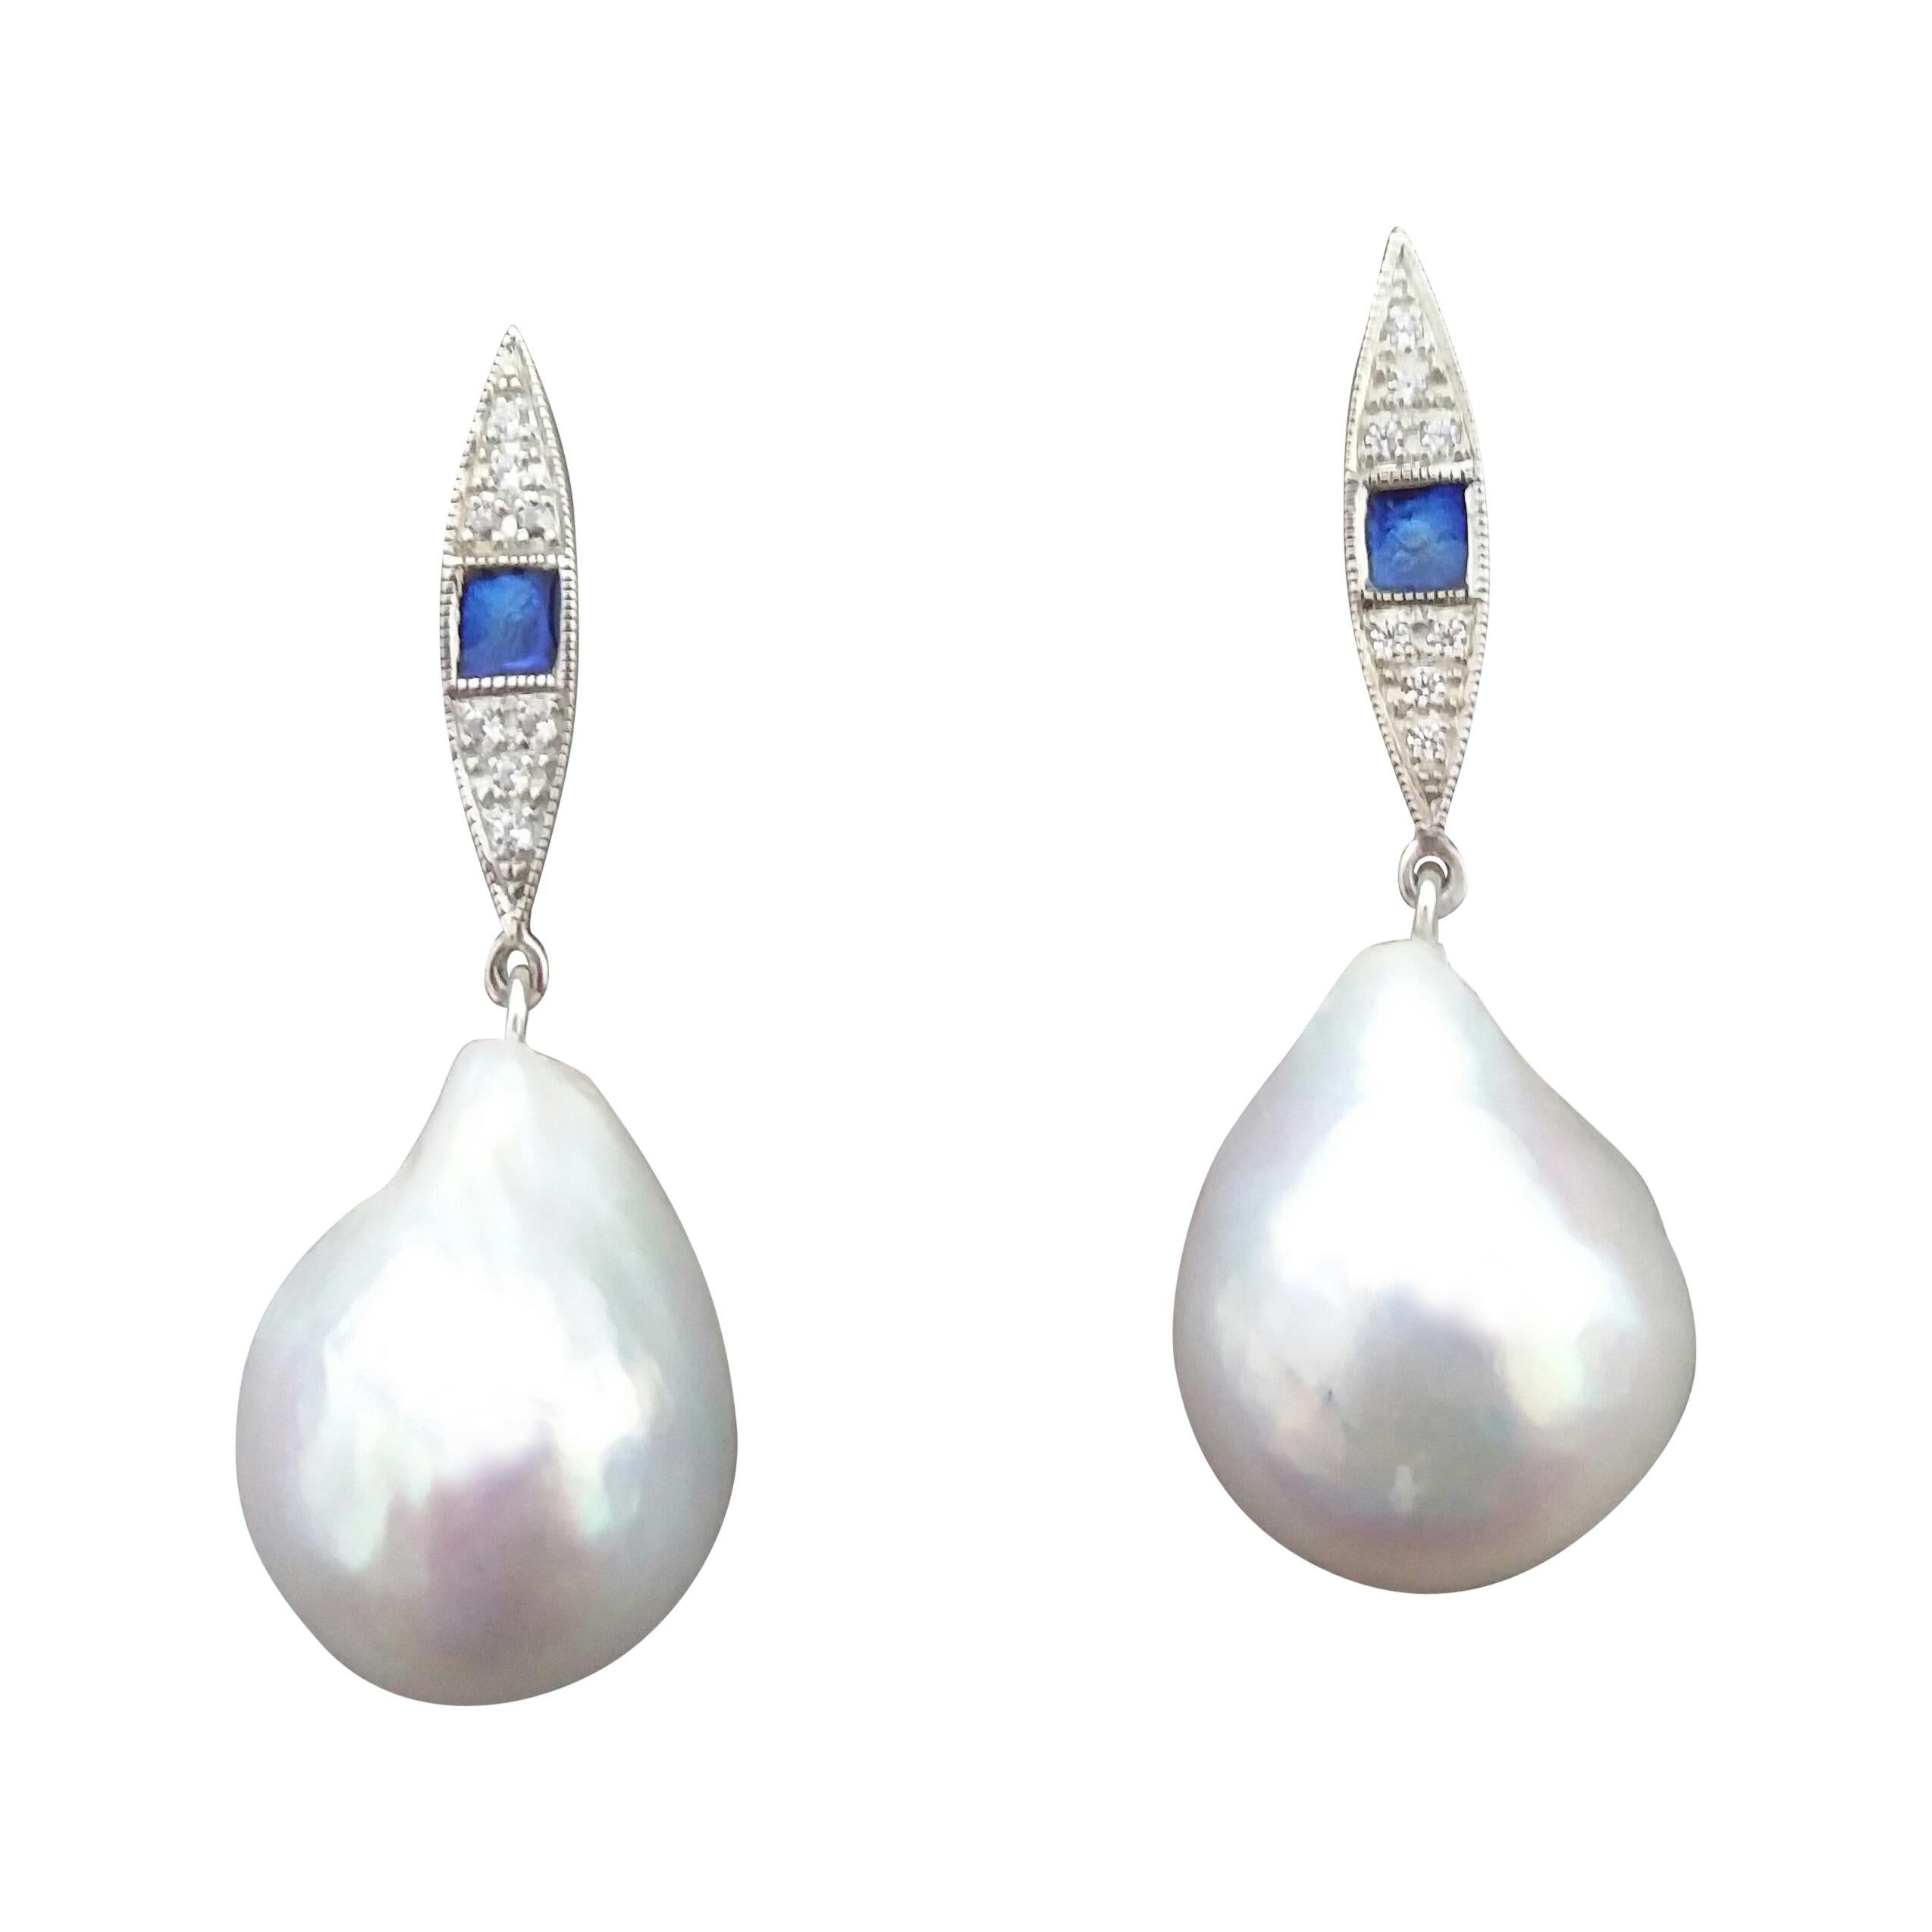 Art Deco Style Gold Diamonds Blue Enamel Pear Shape Baroque Pearls Earrings